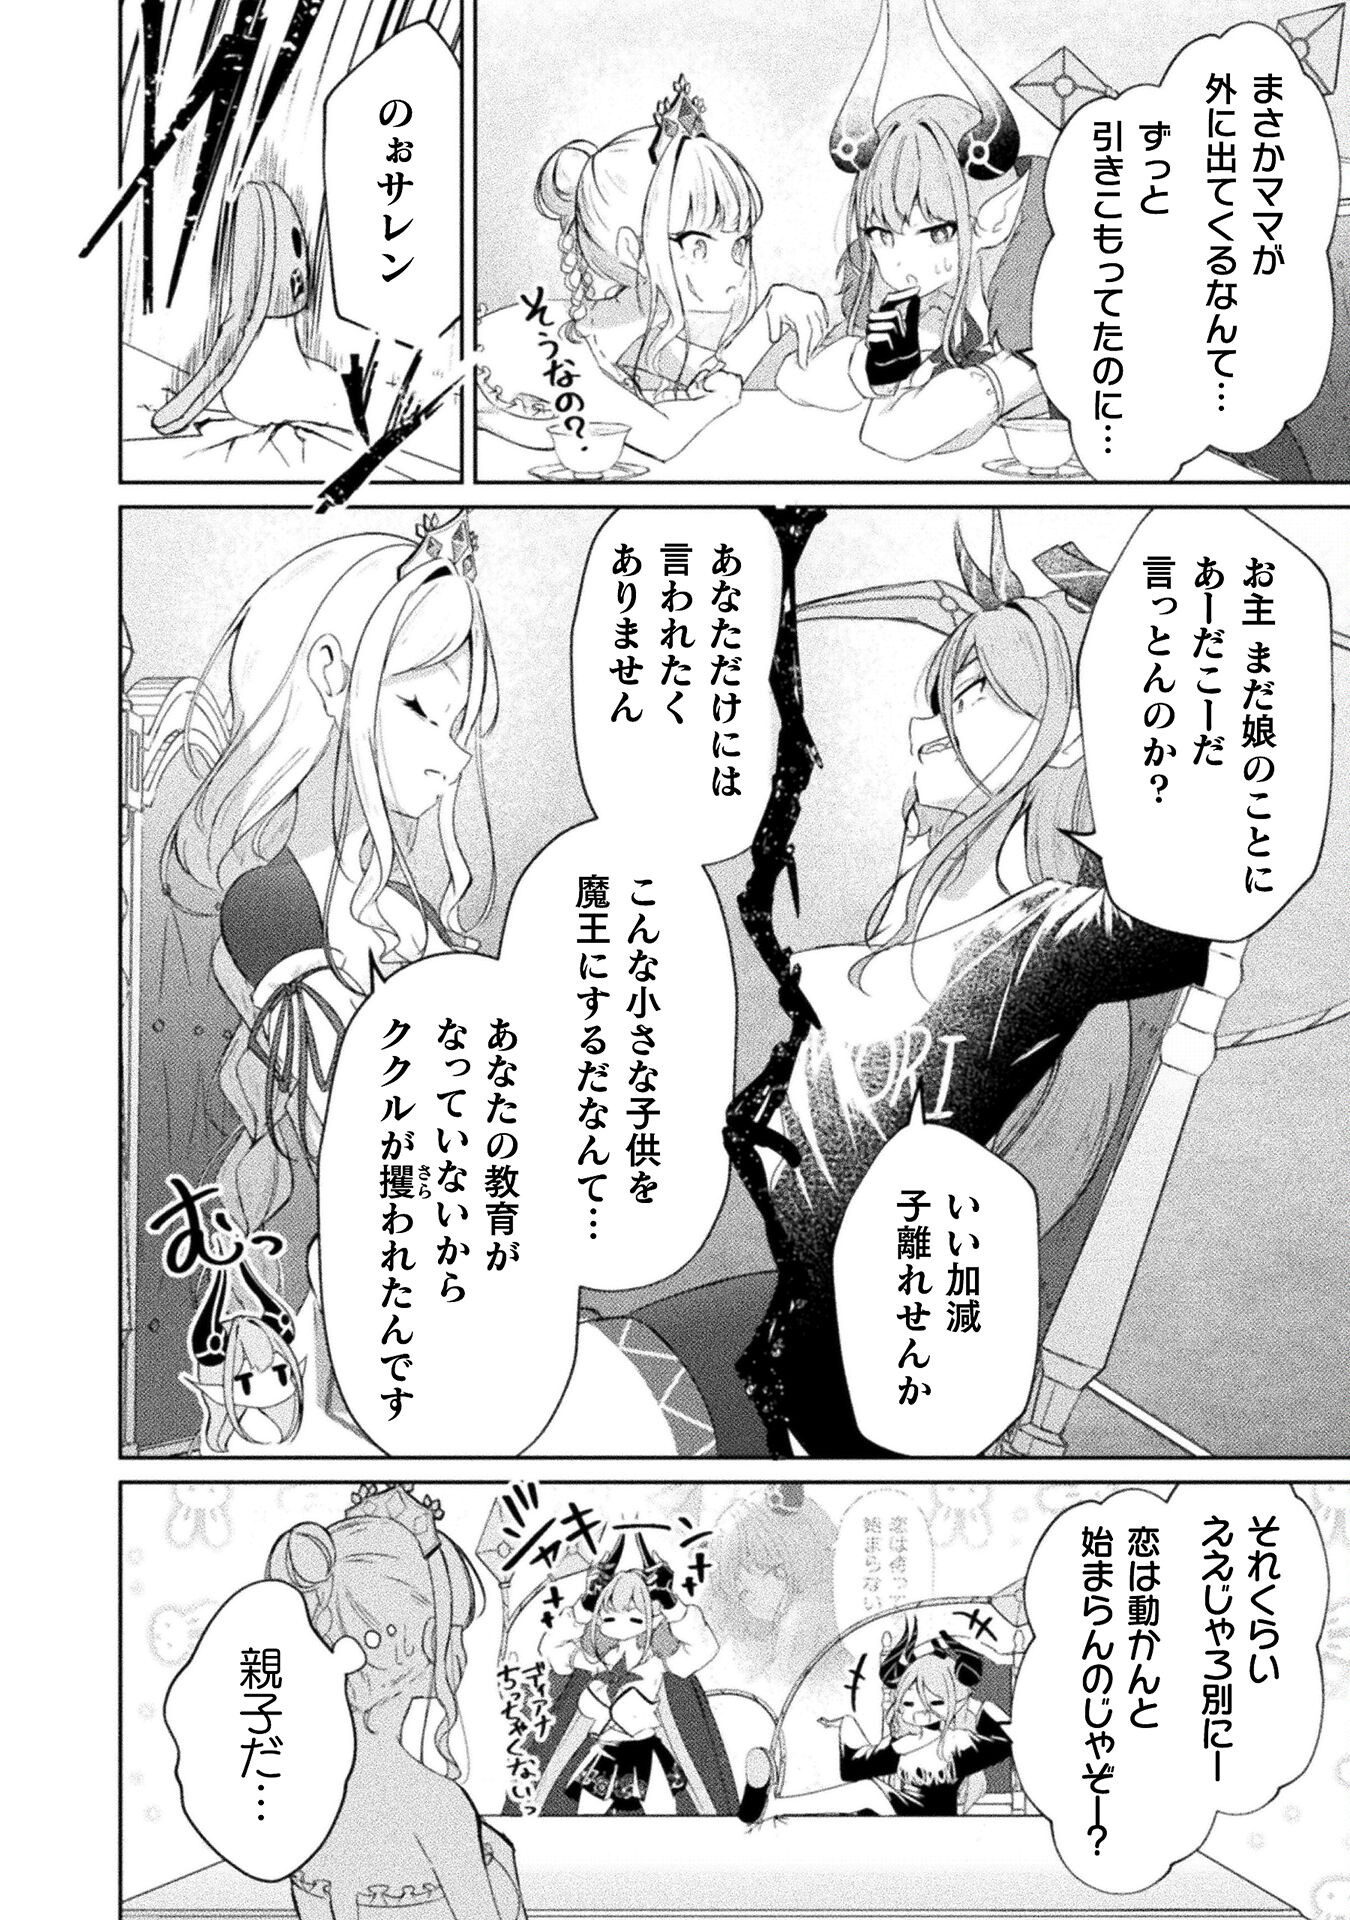 Maou Jou Date Daisakusen! - Chapter 15 - Page 2